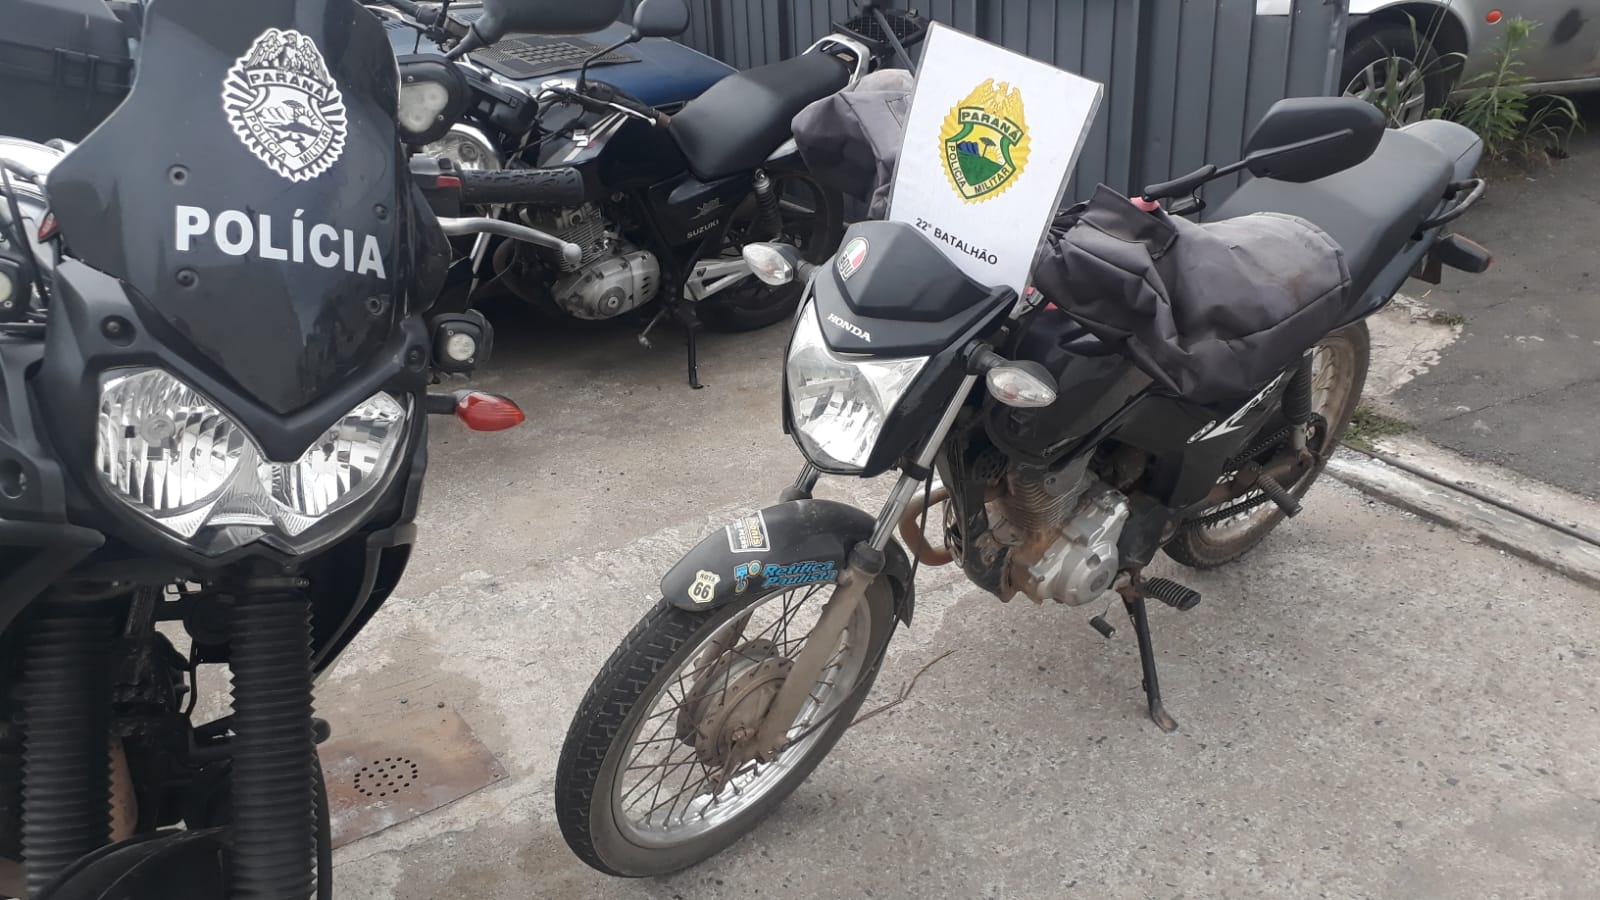 Motocicleta é recuperada pela PM no Guaraituba